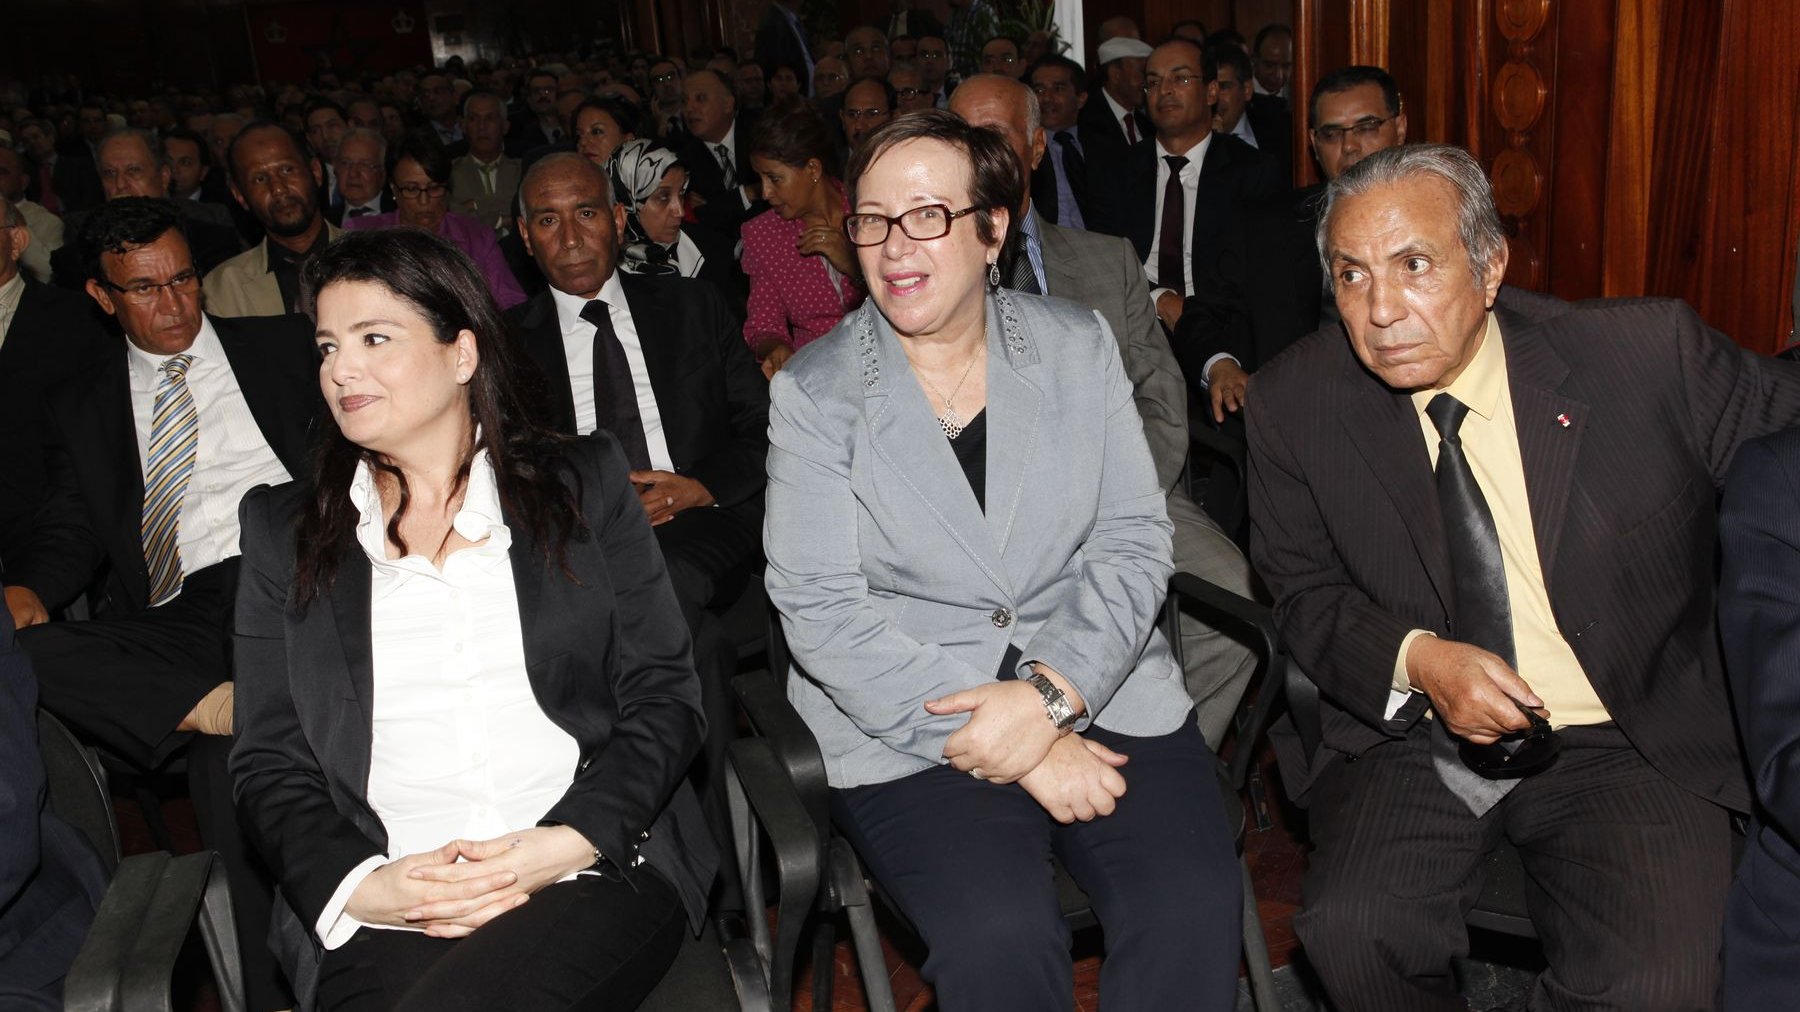 Beaucoup de monde était présent à l'investiture du nouveau wali de Casablanca. Parmi les personnes en présence, l'ancienne ministre de la Famille, Nezha Skali.
